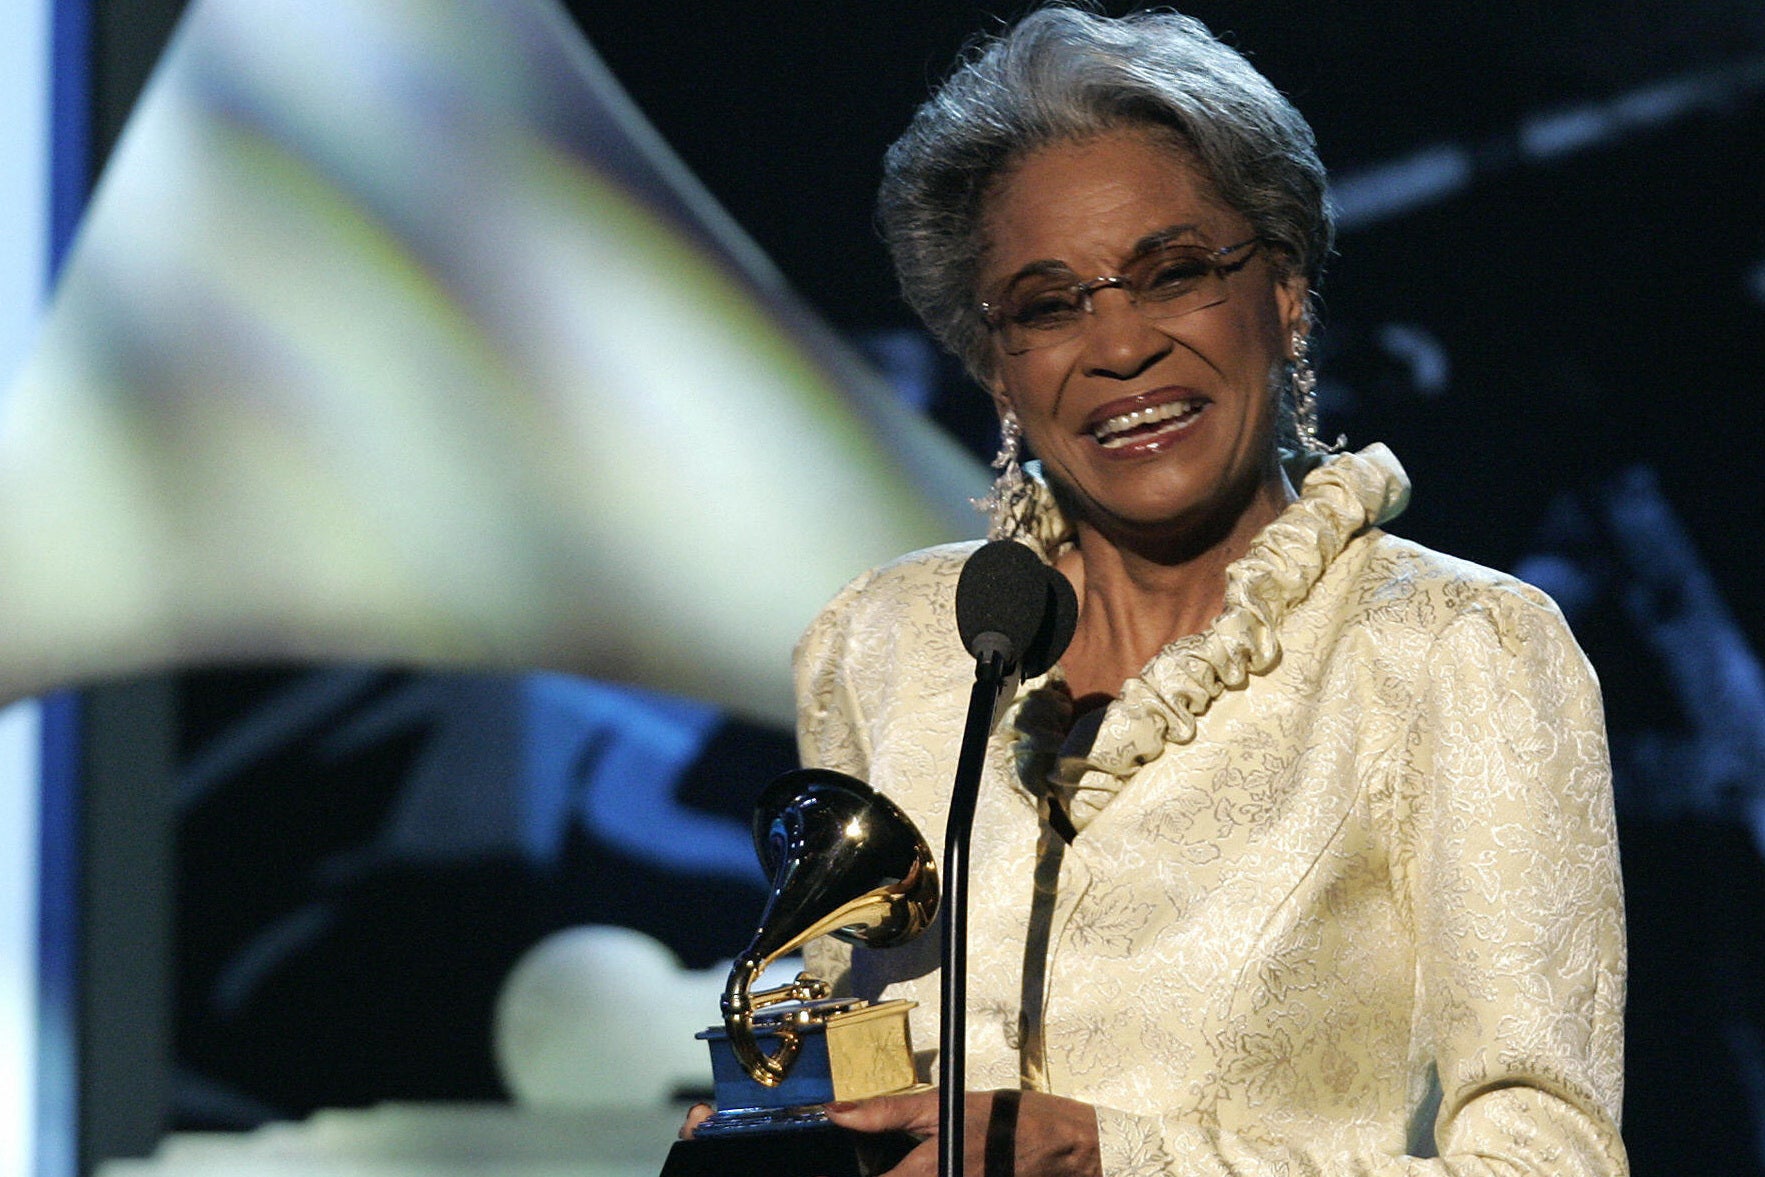 Wilson receives the best jazz vocal album Grammy in 2005